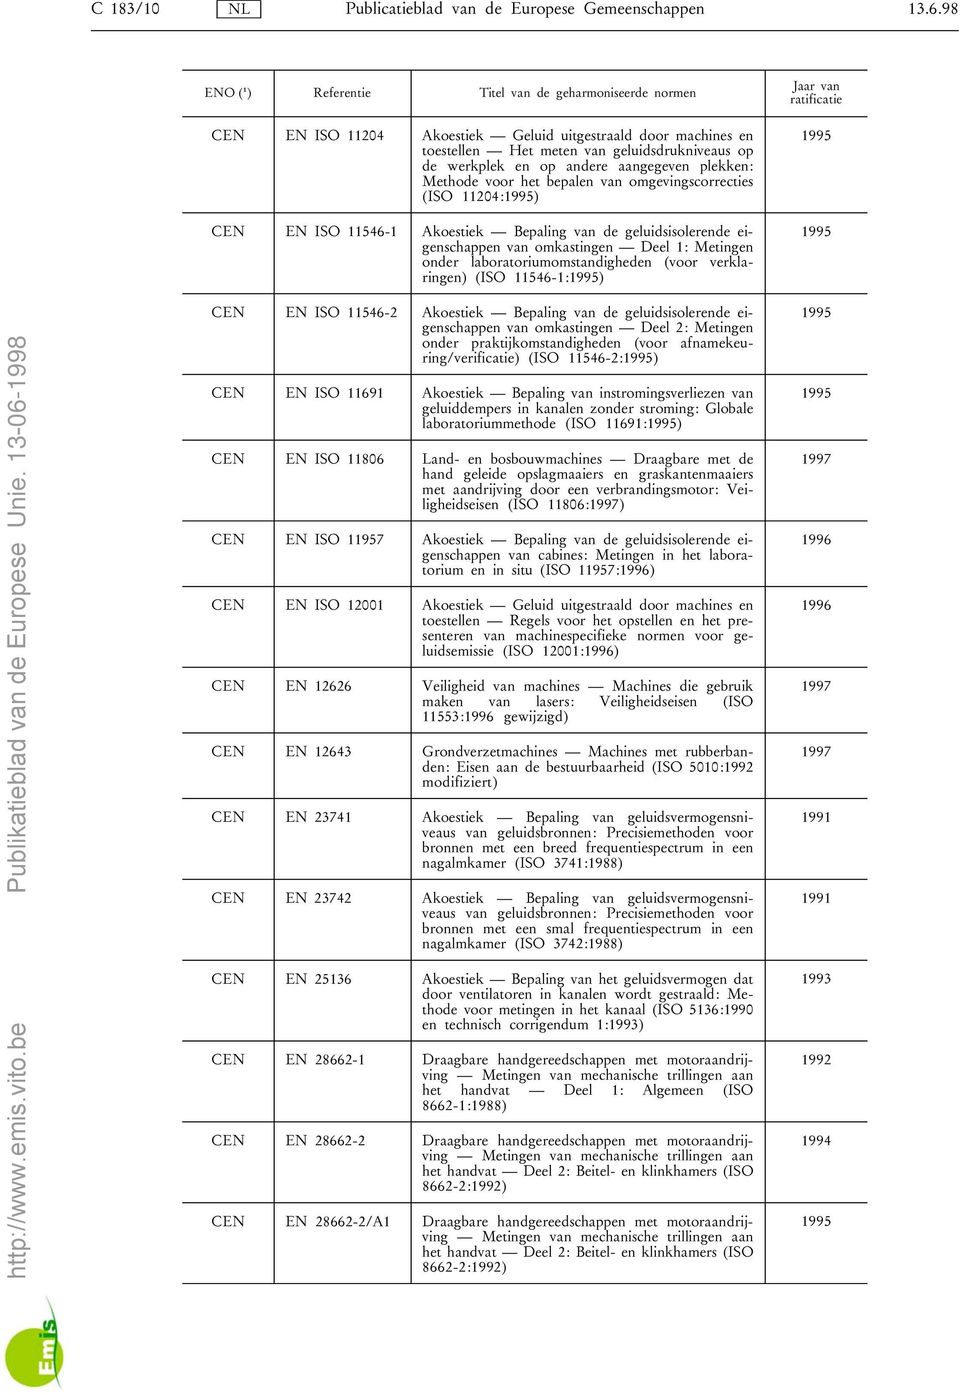 omgevingscorrecties (ISO 11204:) CEN EN ISO 11546-1 Akoestiek Bepaling van de geluidsisolerende eigenschappen van omkastingen Deel 1: Metingen onder laboratoriumomstandigheden (voor verklaringen)